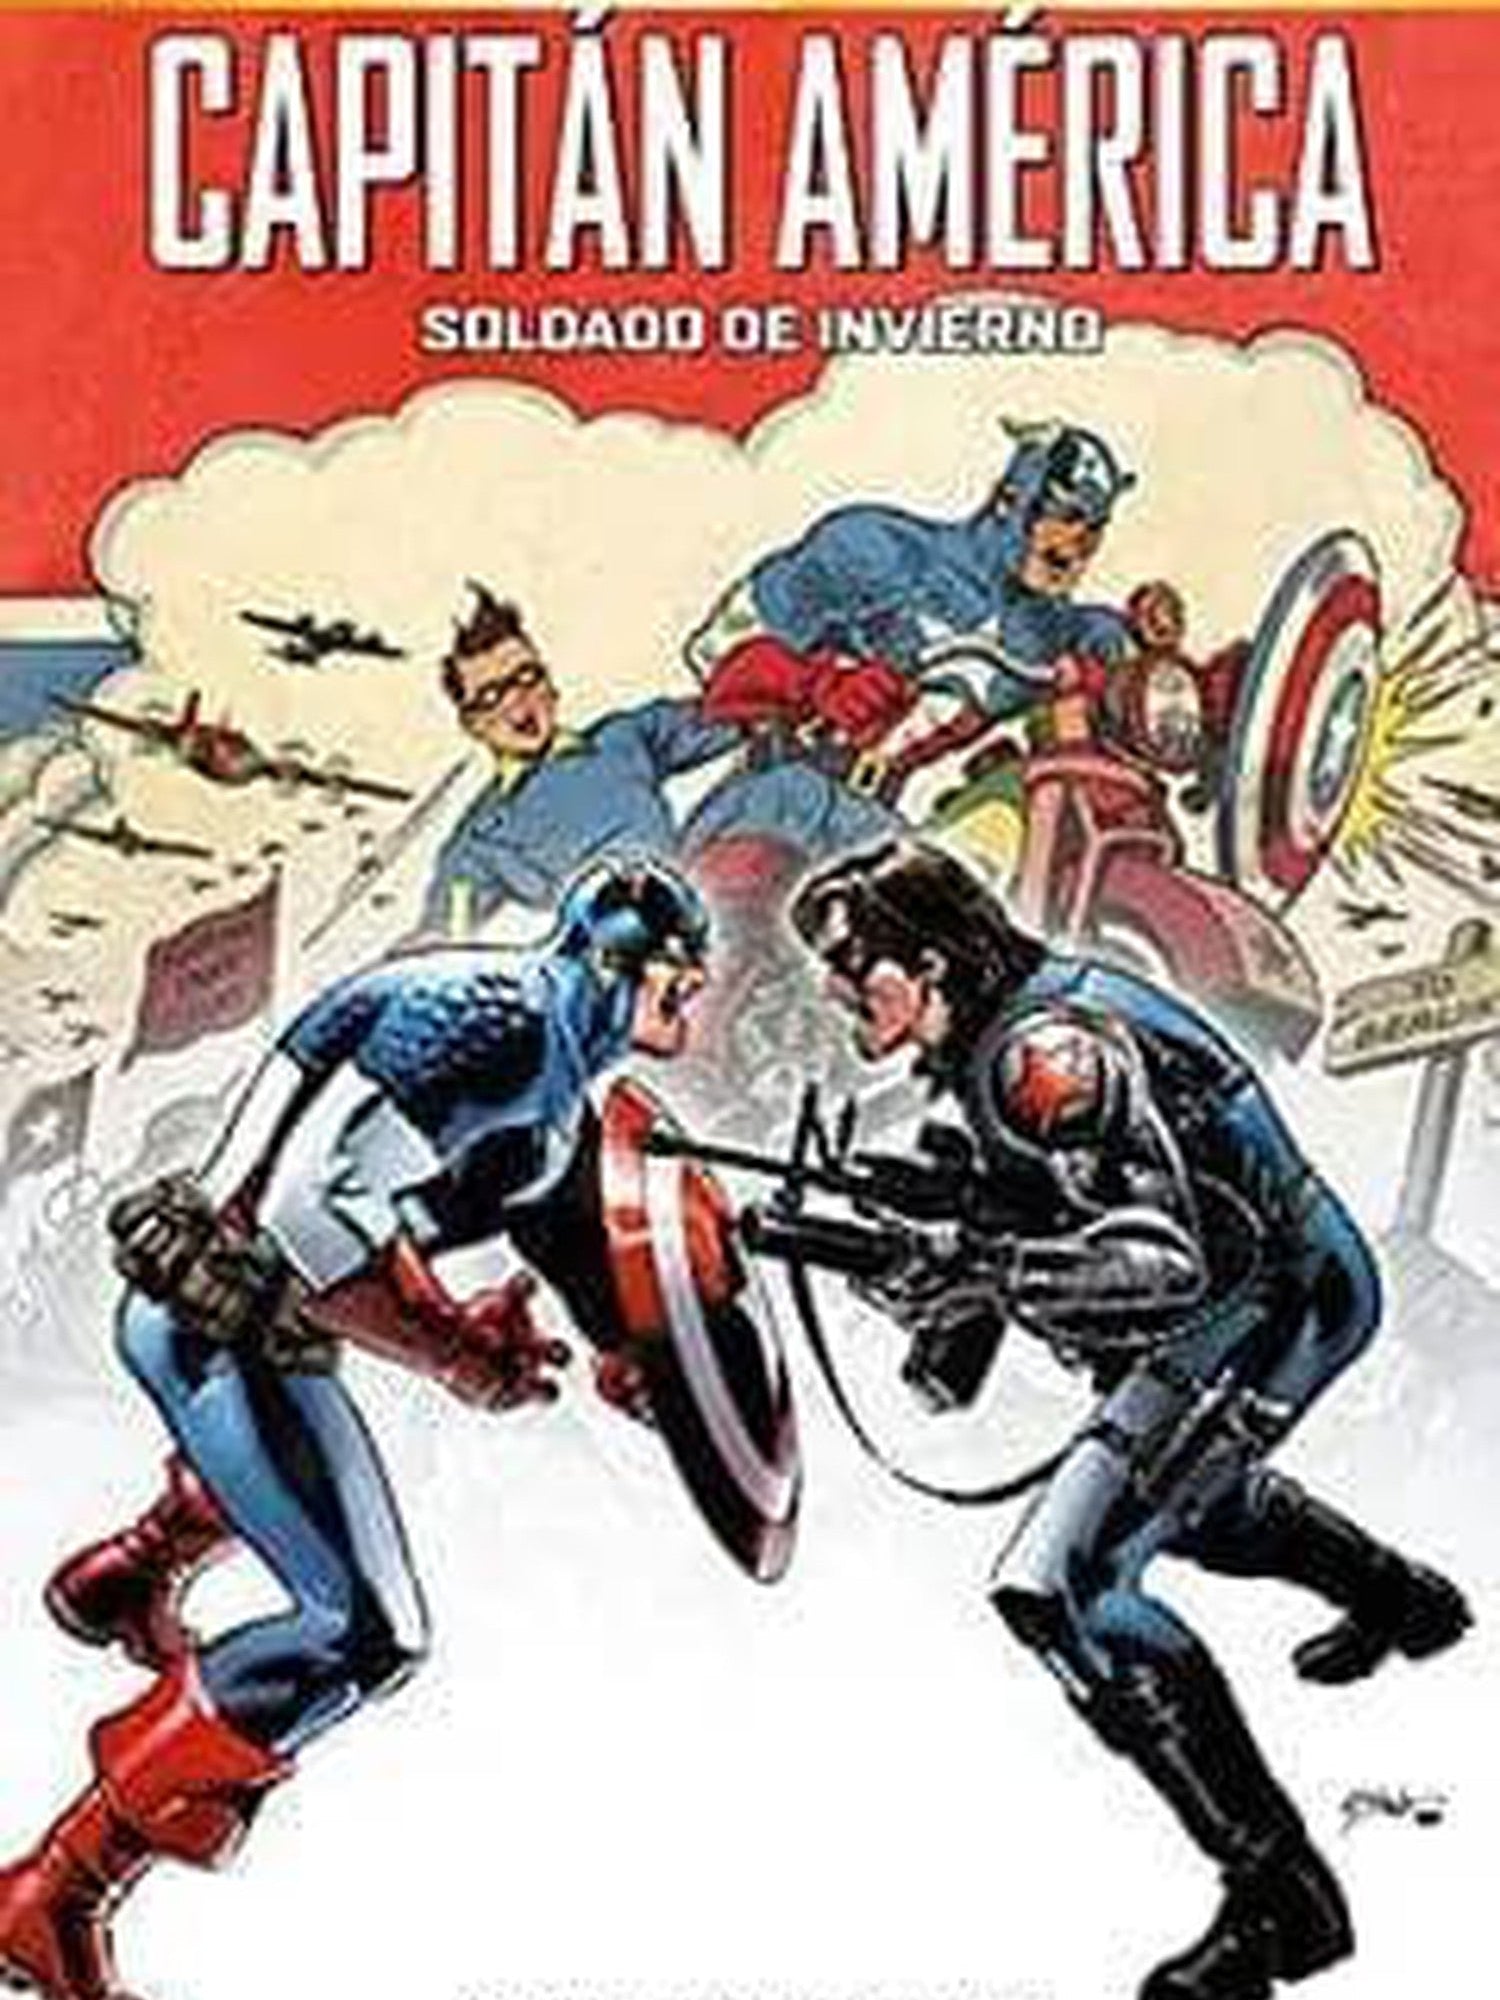 Must Have: Capitán América - Soldado de Invierno Panini España ENcuadrocomics